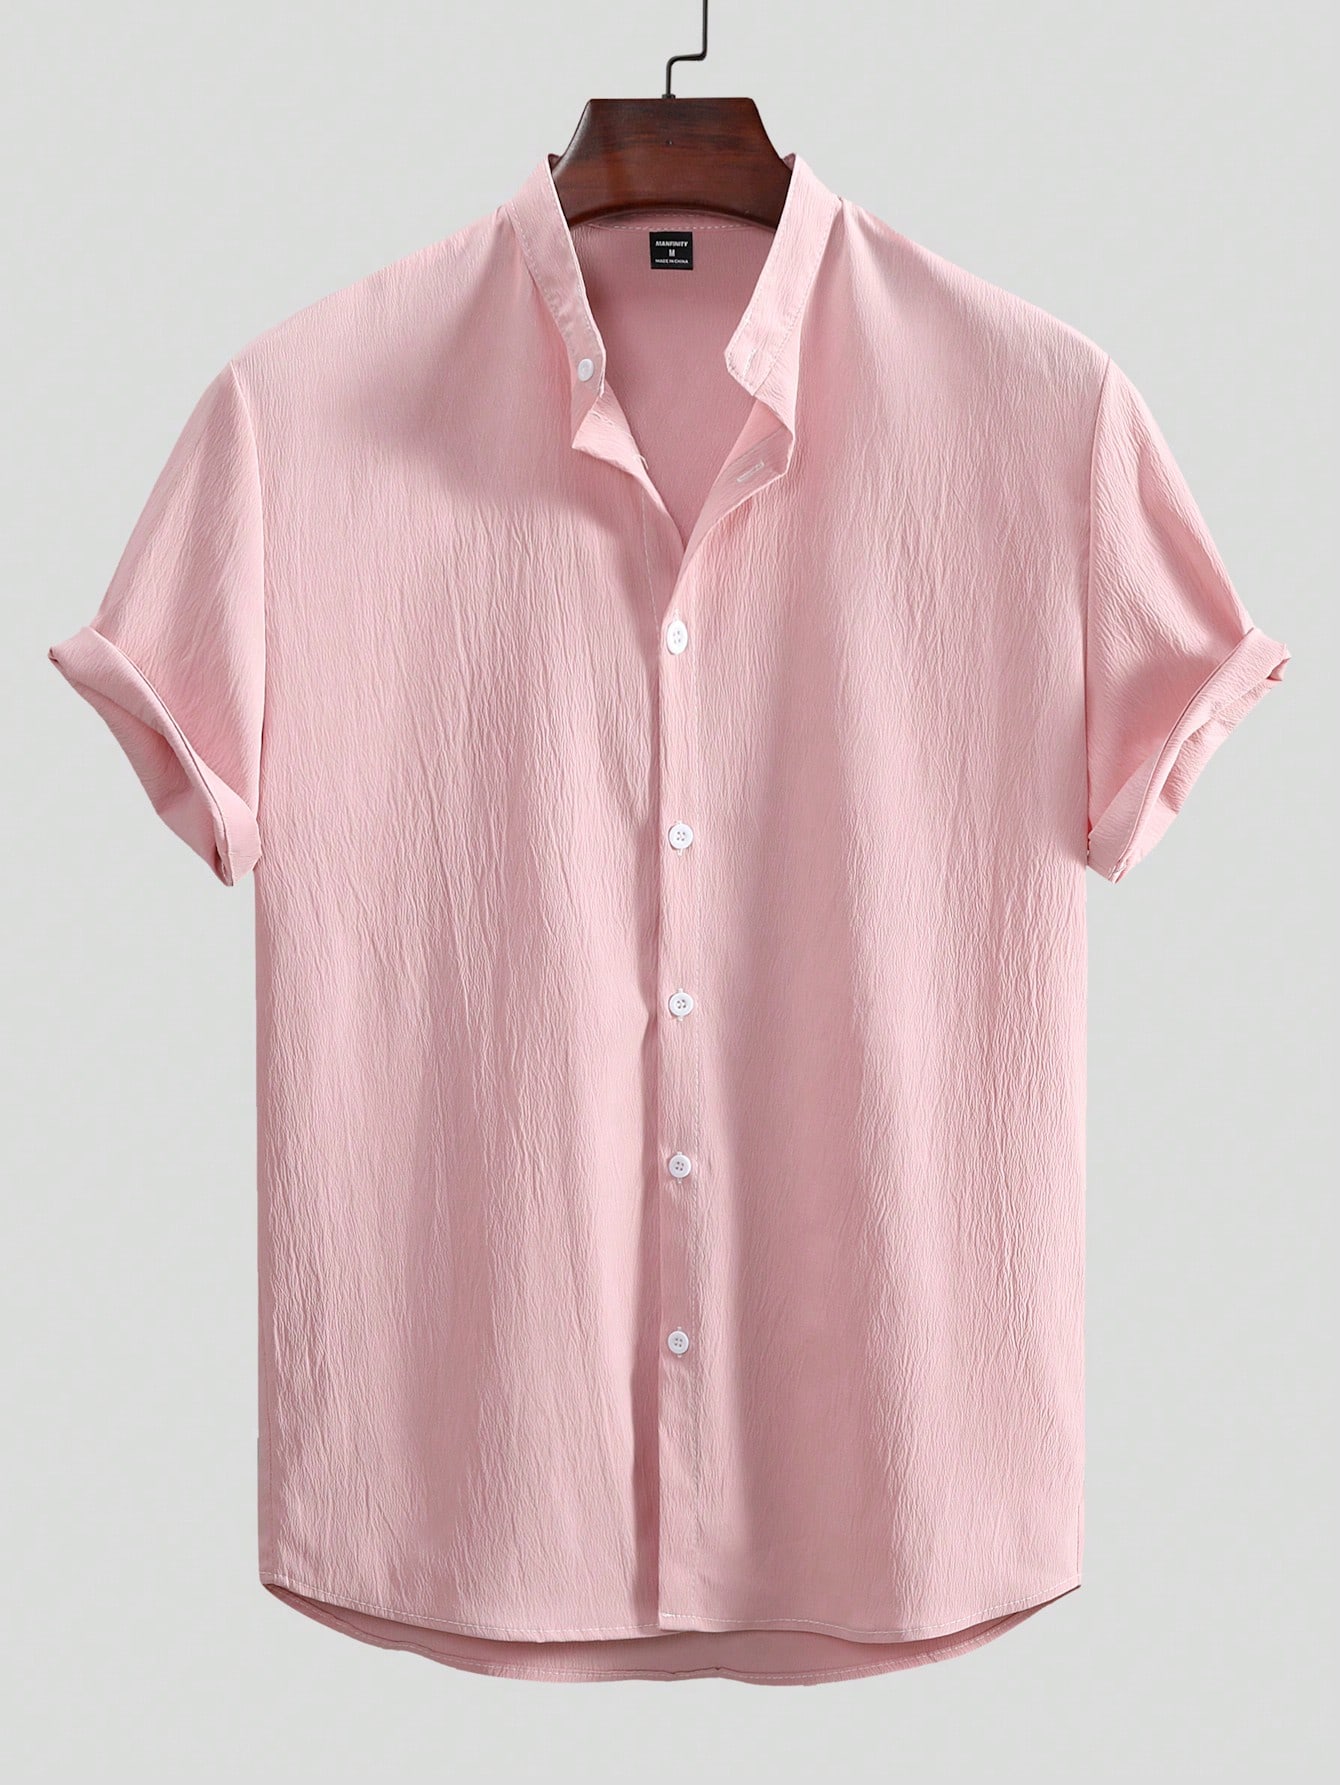 Мужская текстурированная рубашка с коротким рукавом Manfinity Homme на пуговицах спереди, розовый рубашка мужская однотонная с коротким рукавом модная повседневная блуза оверсайз уличная одежда в корейском стиле 2021